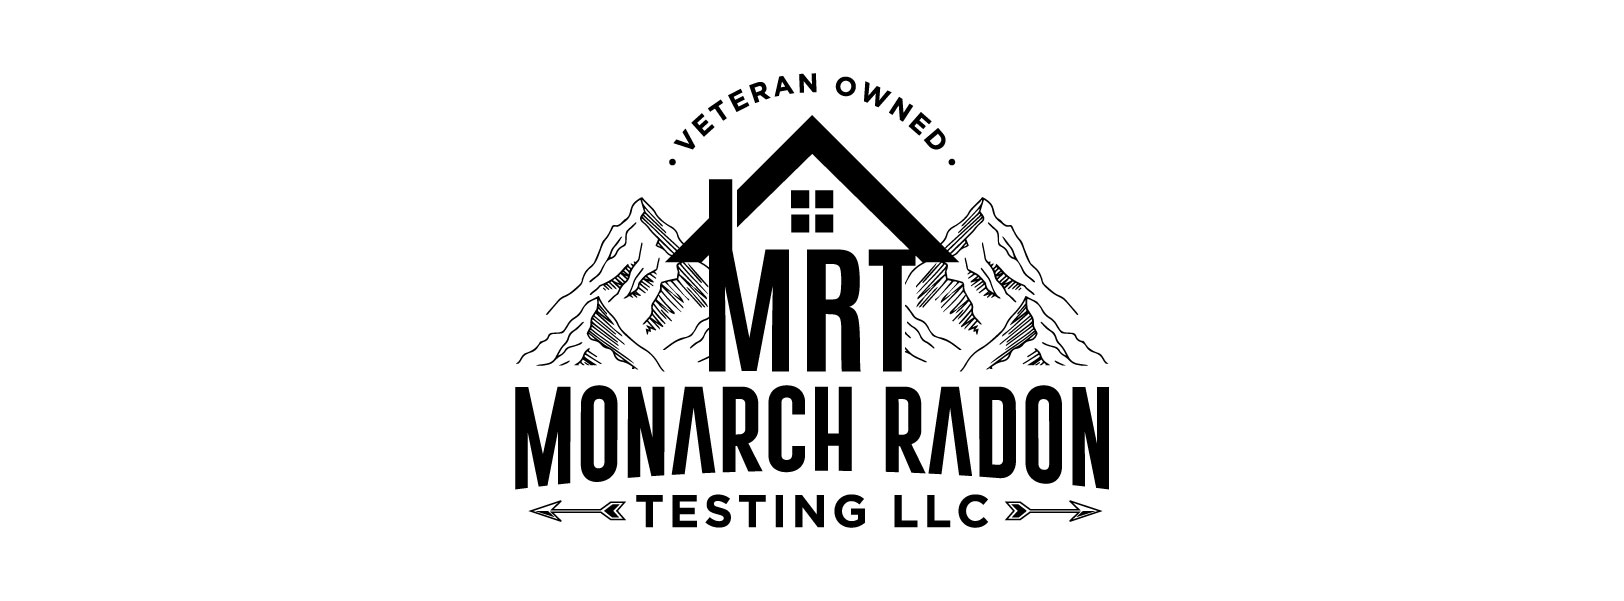 Monarch Radon Testing